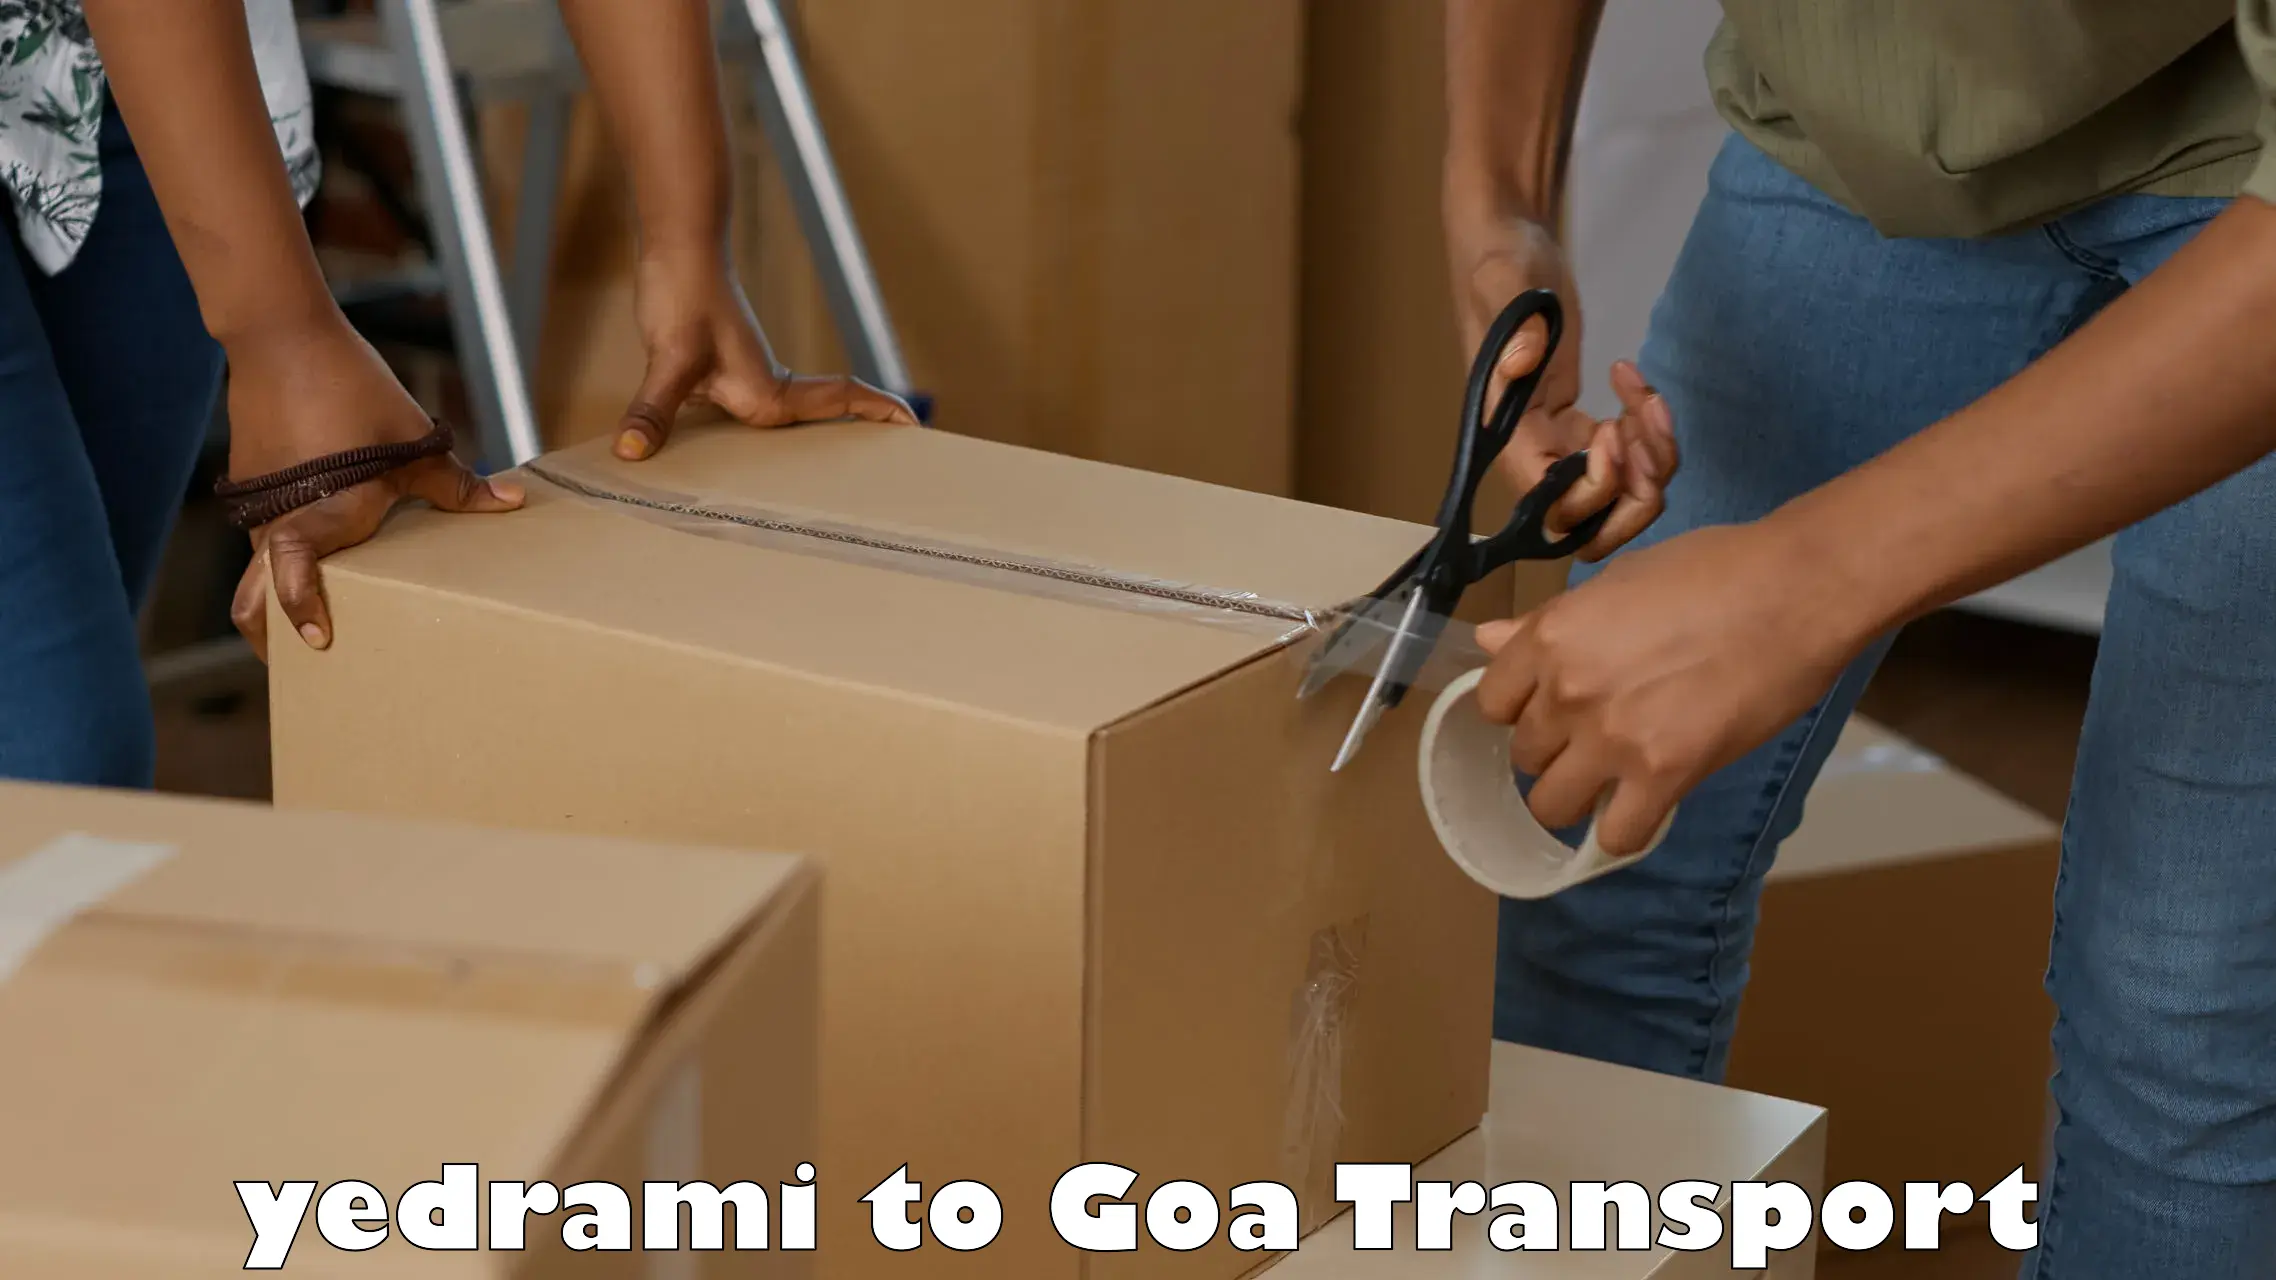 Two wheeler transport services yedrami to Goa